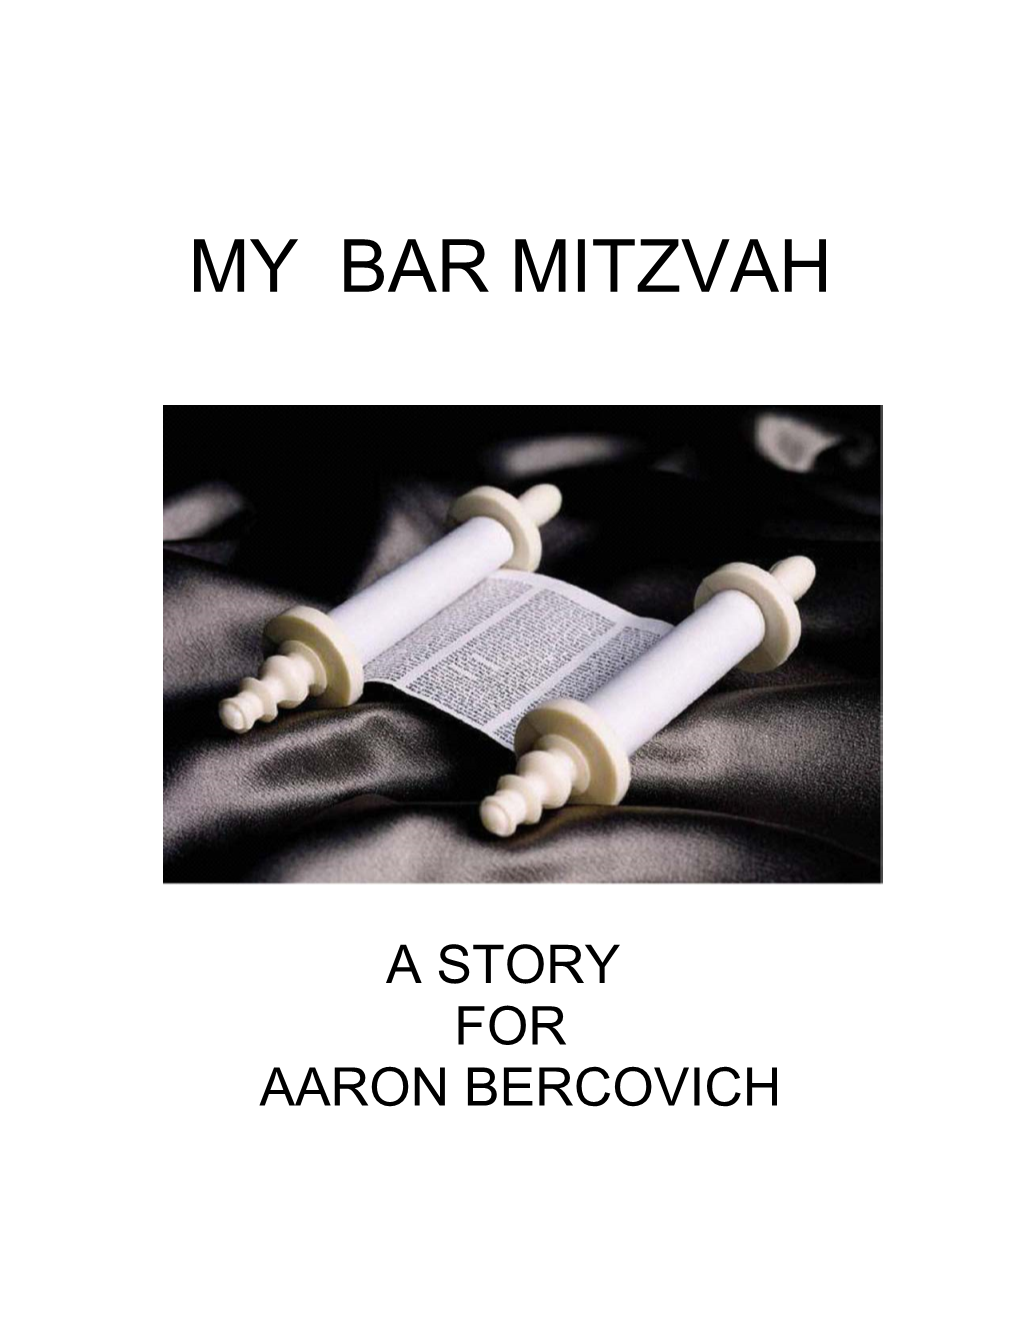 My Bar Mitzvah